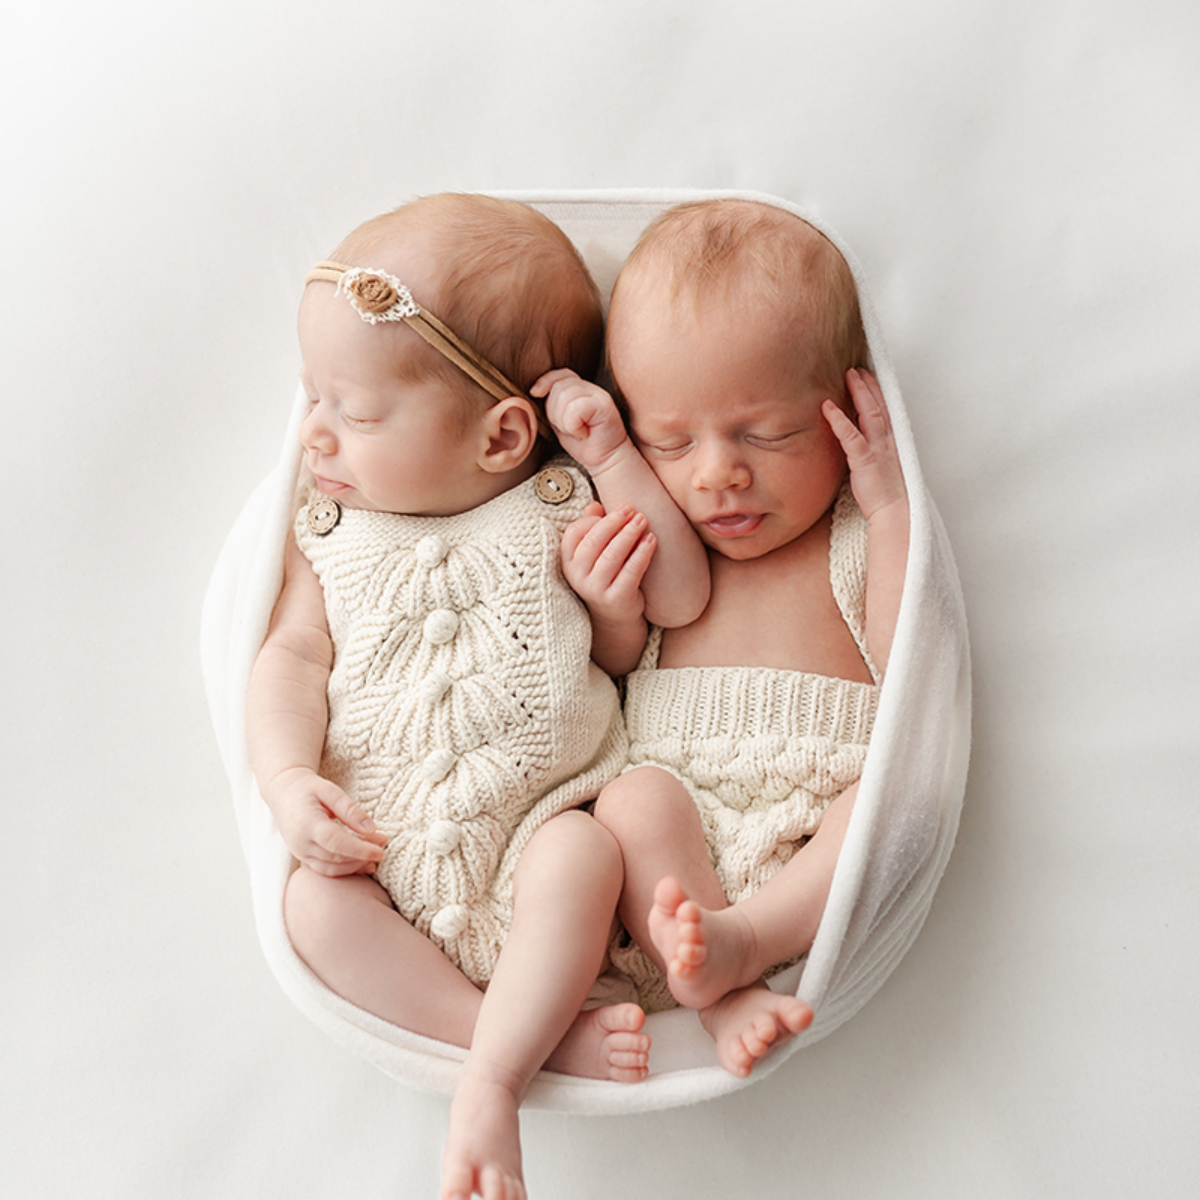 zwillinge babyshooting fotostudio schaumburg agi rygula